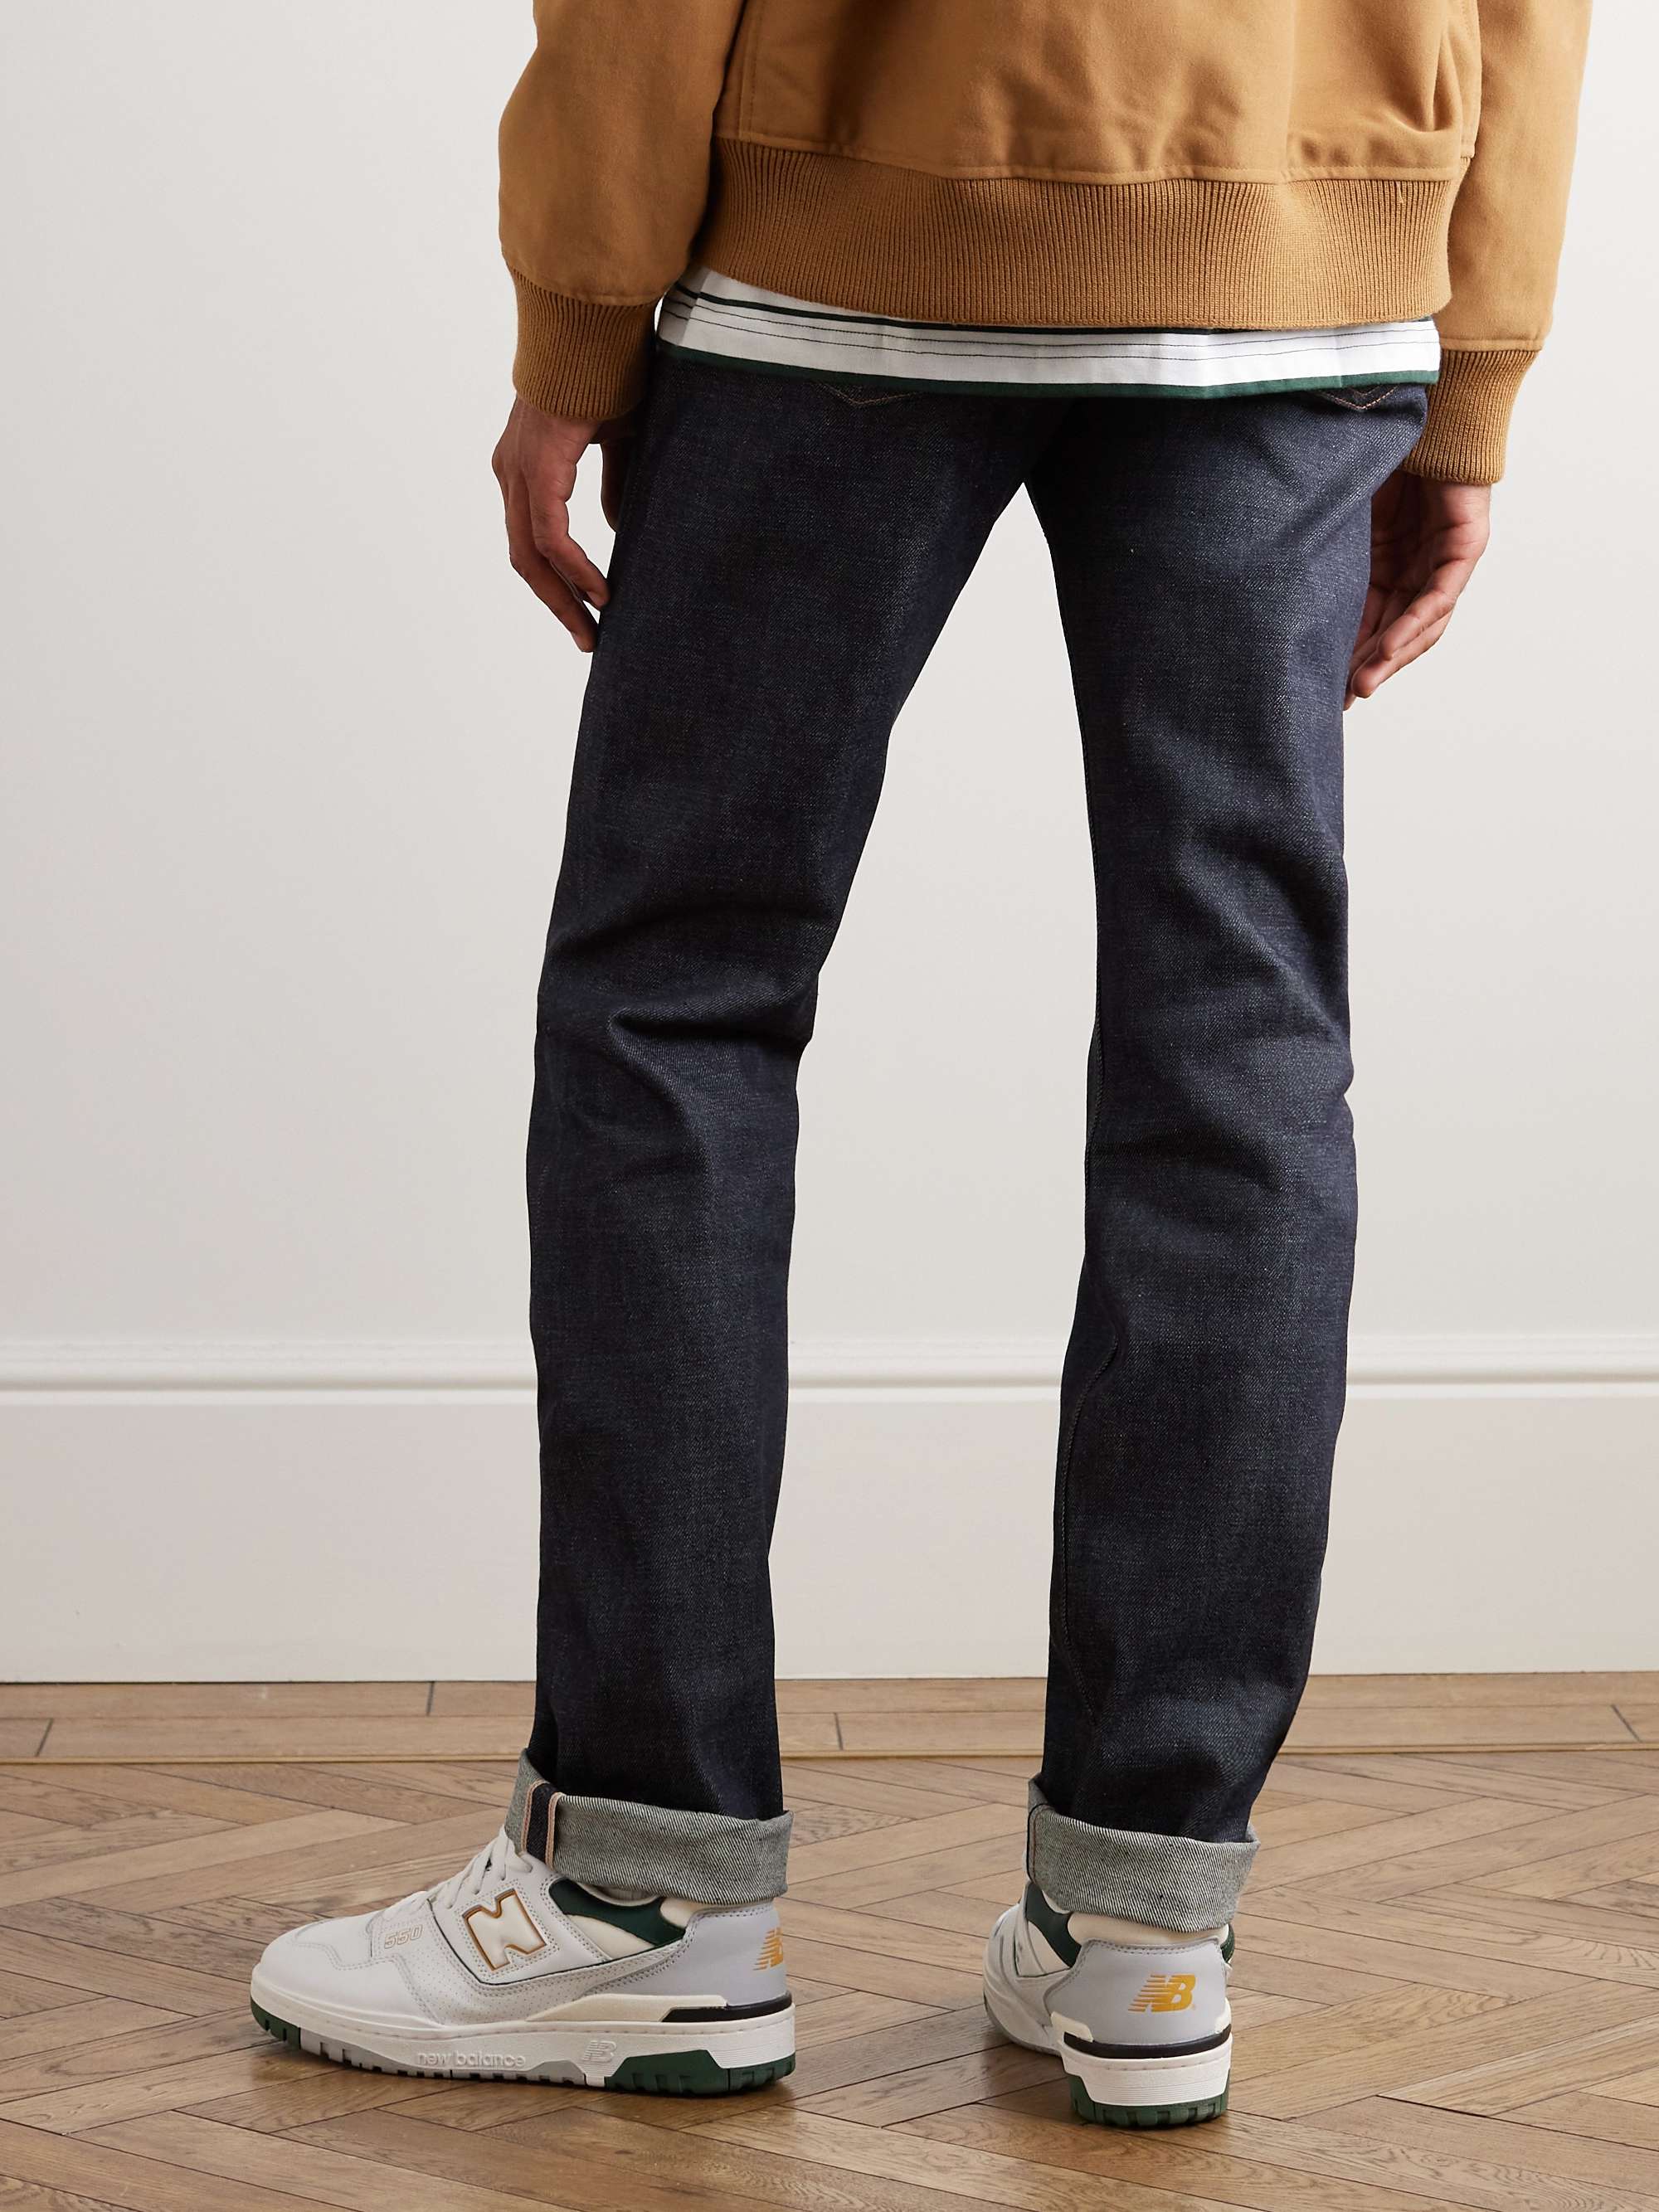 New Standard Dry Selvedge Denim Jeans